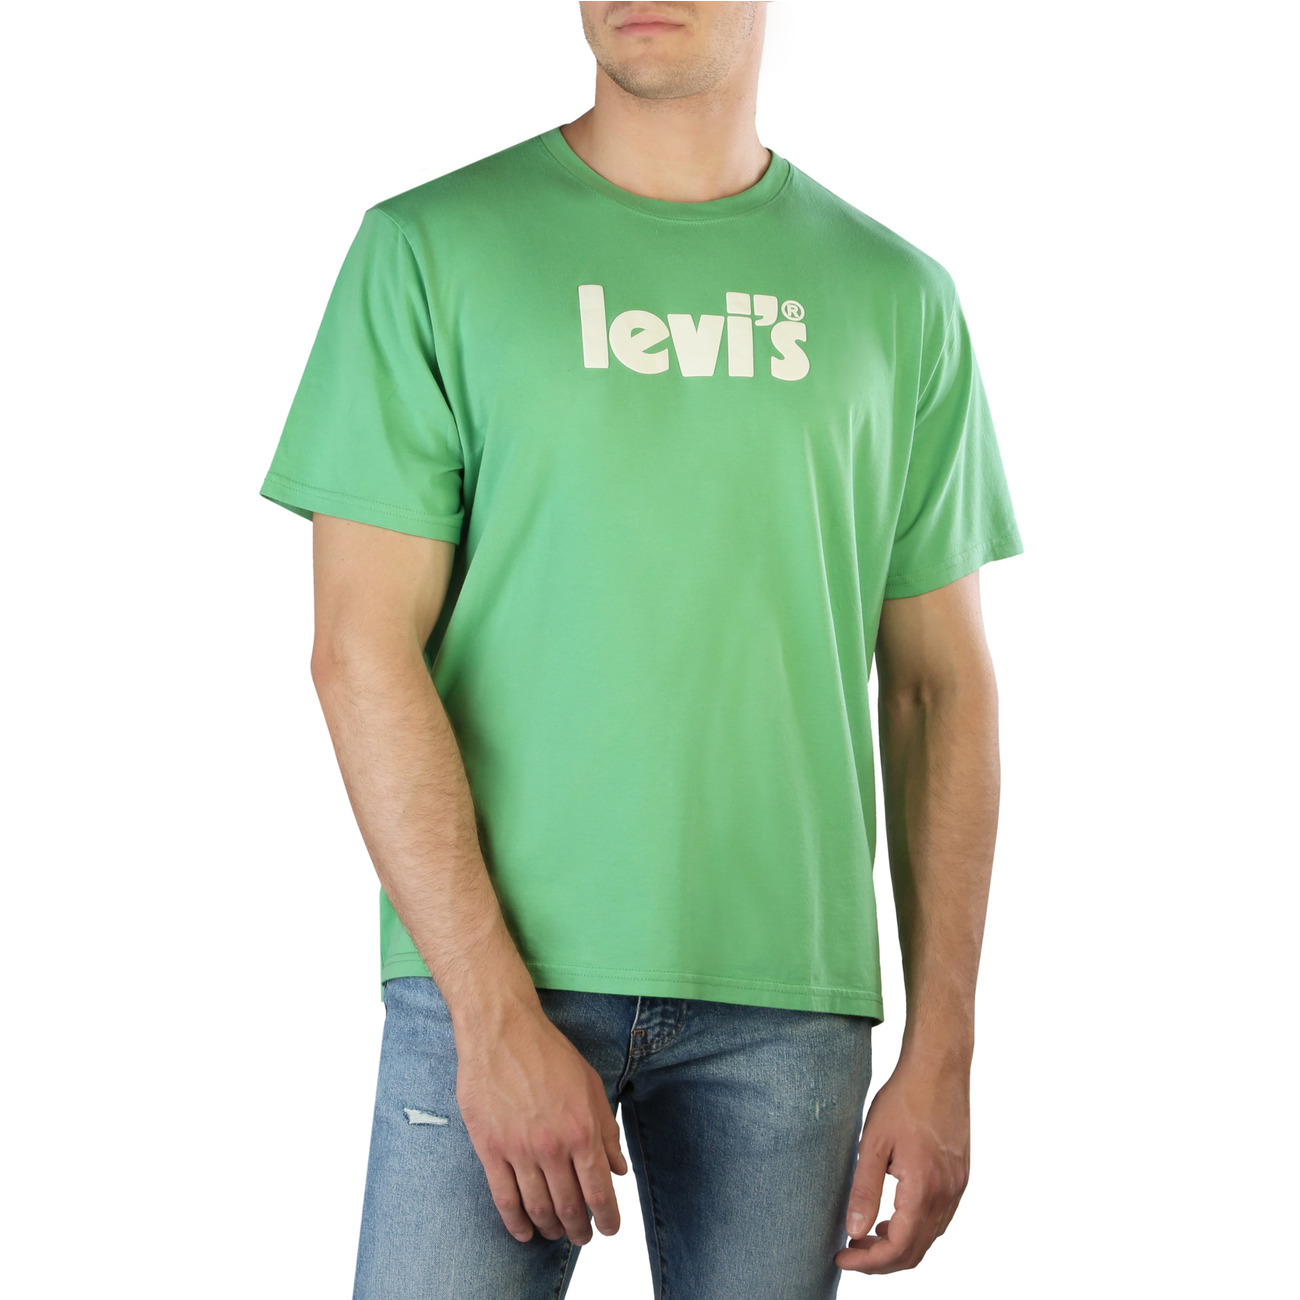 Levi's - 16143